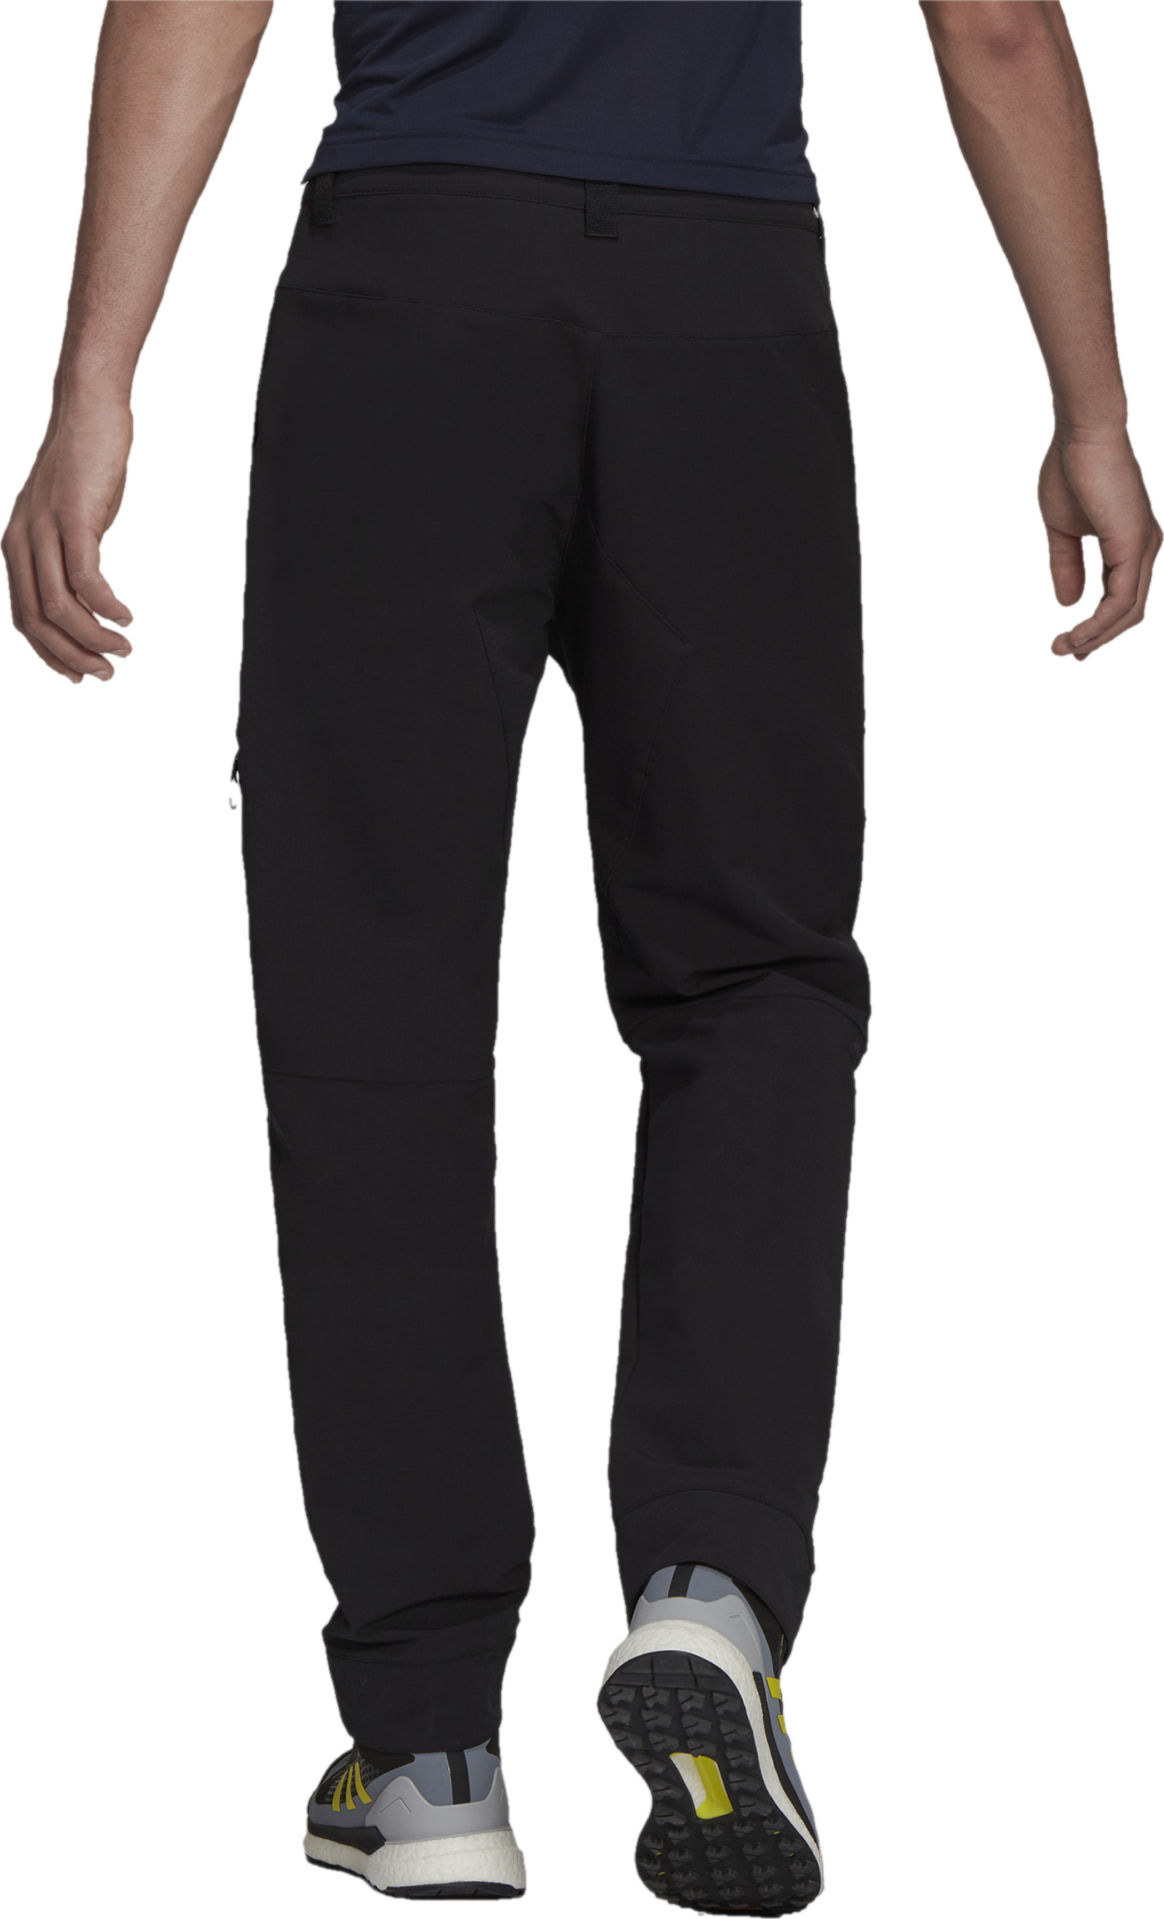 Брюки Adidas Terrex Yearound Soft Shell Pants (H64172) купить за 13499 руб.в интернет-магазине